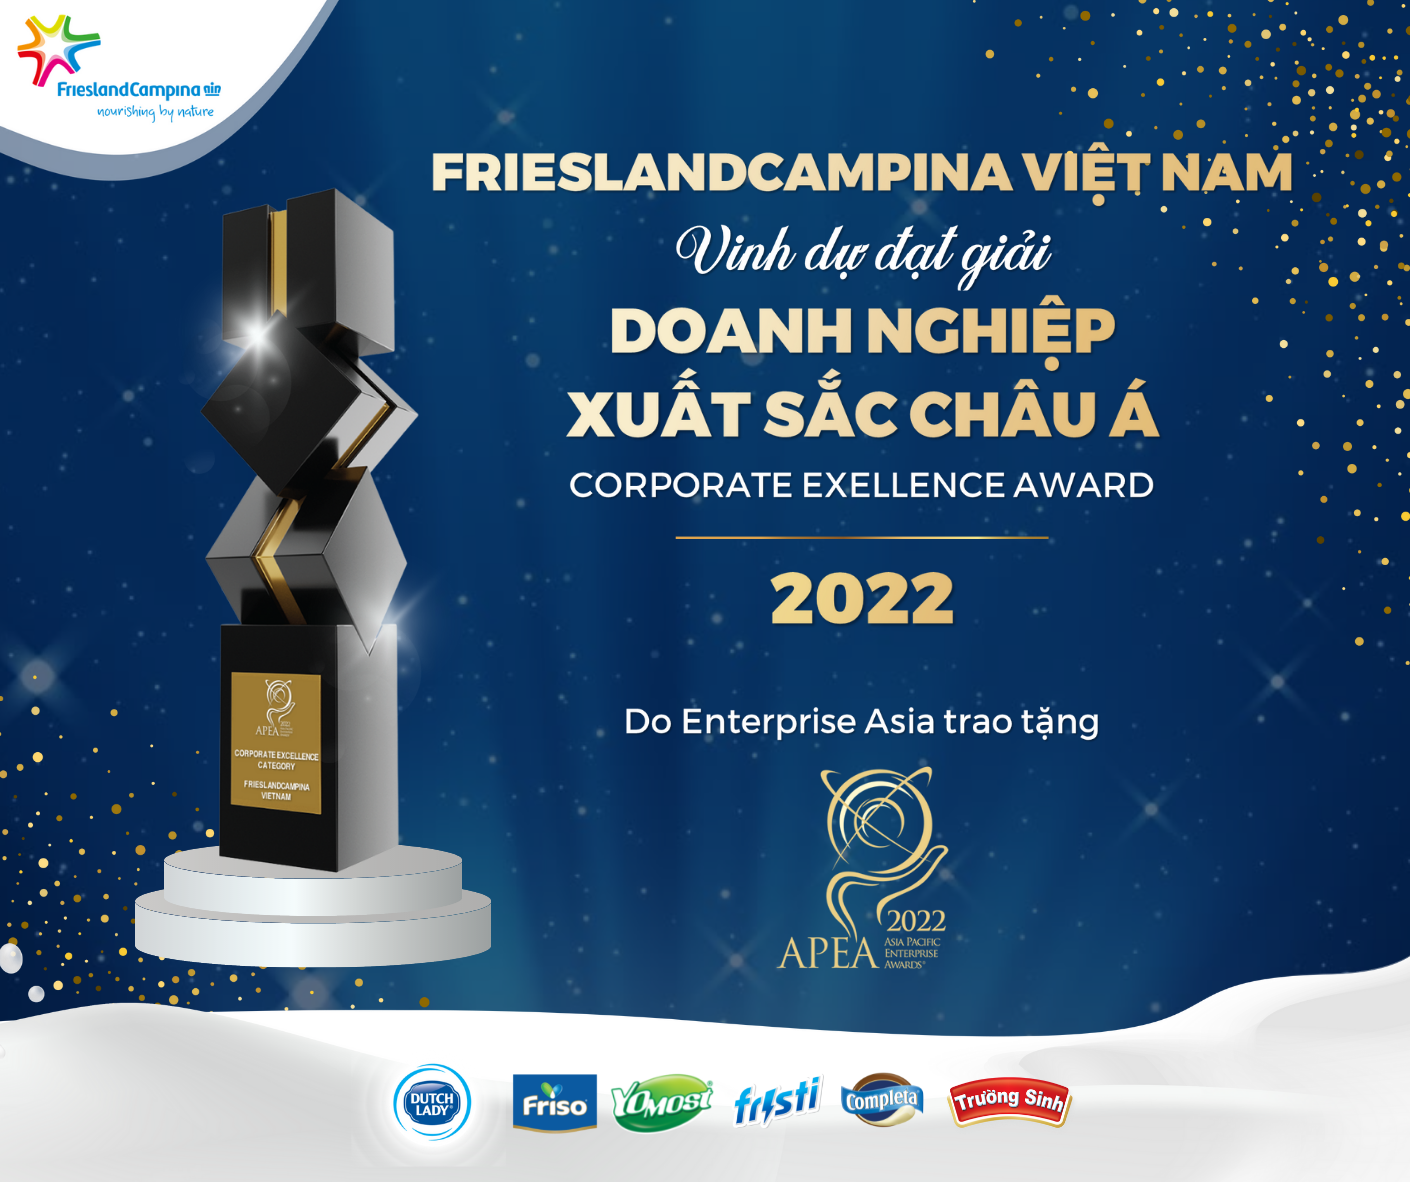 FrieslandCampina Việt Nam đạt giải thưởng doanh nghiệp xuất sắc châu Á 2022 - 2